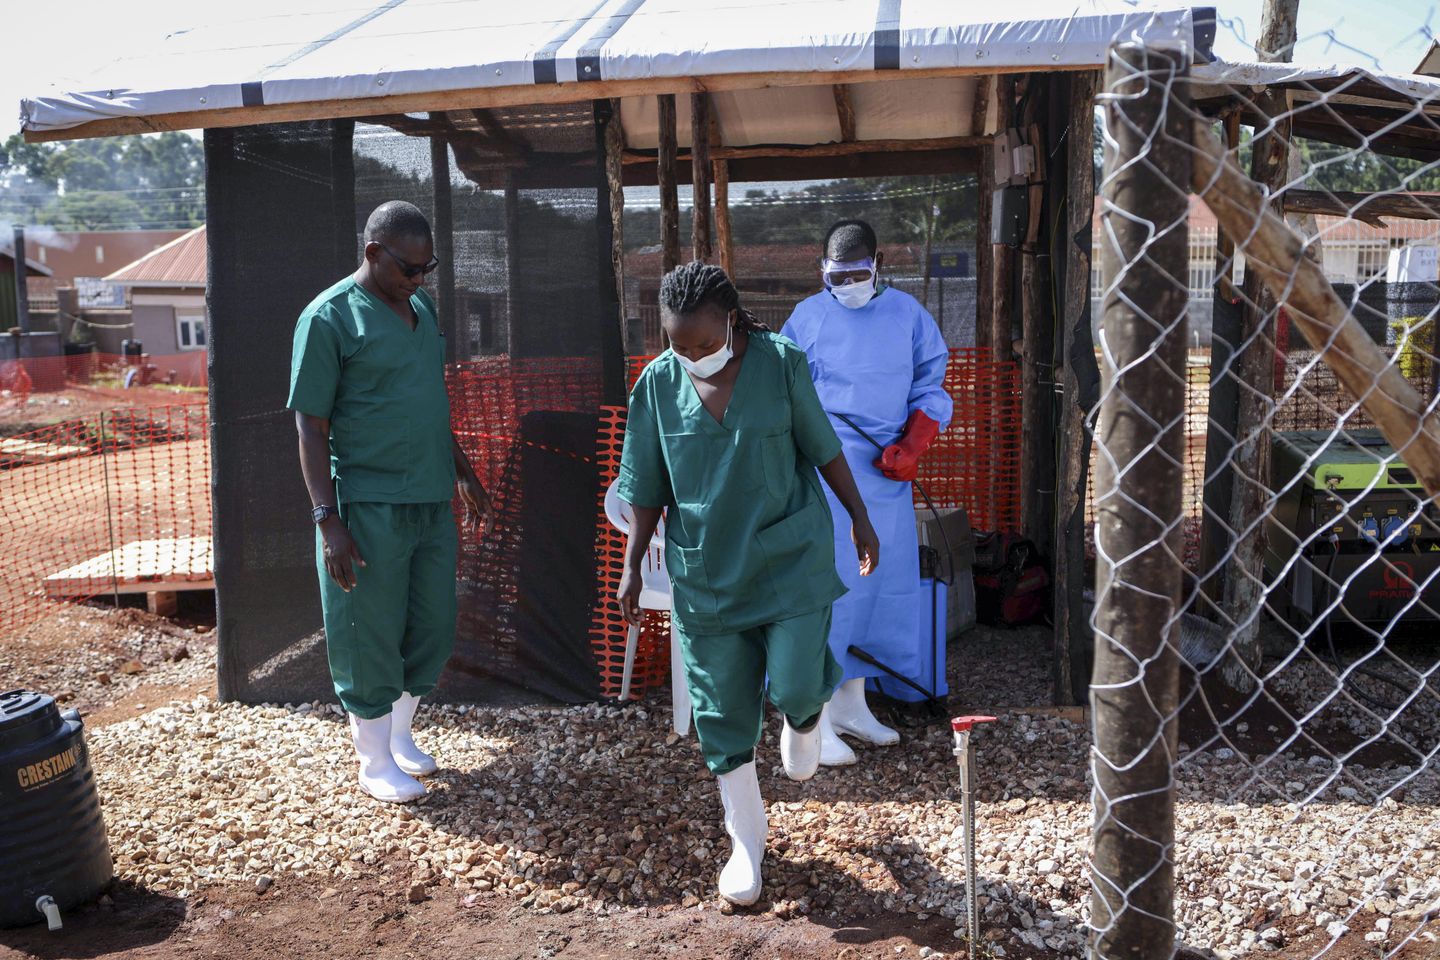 ABD, Uganda'dan gelen yolcuları Ebola için taramaya başlayacak